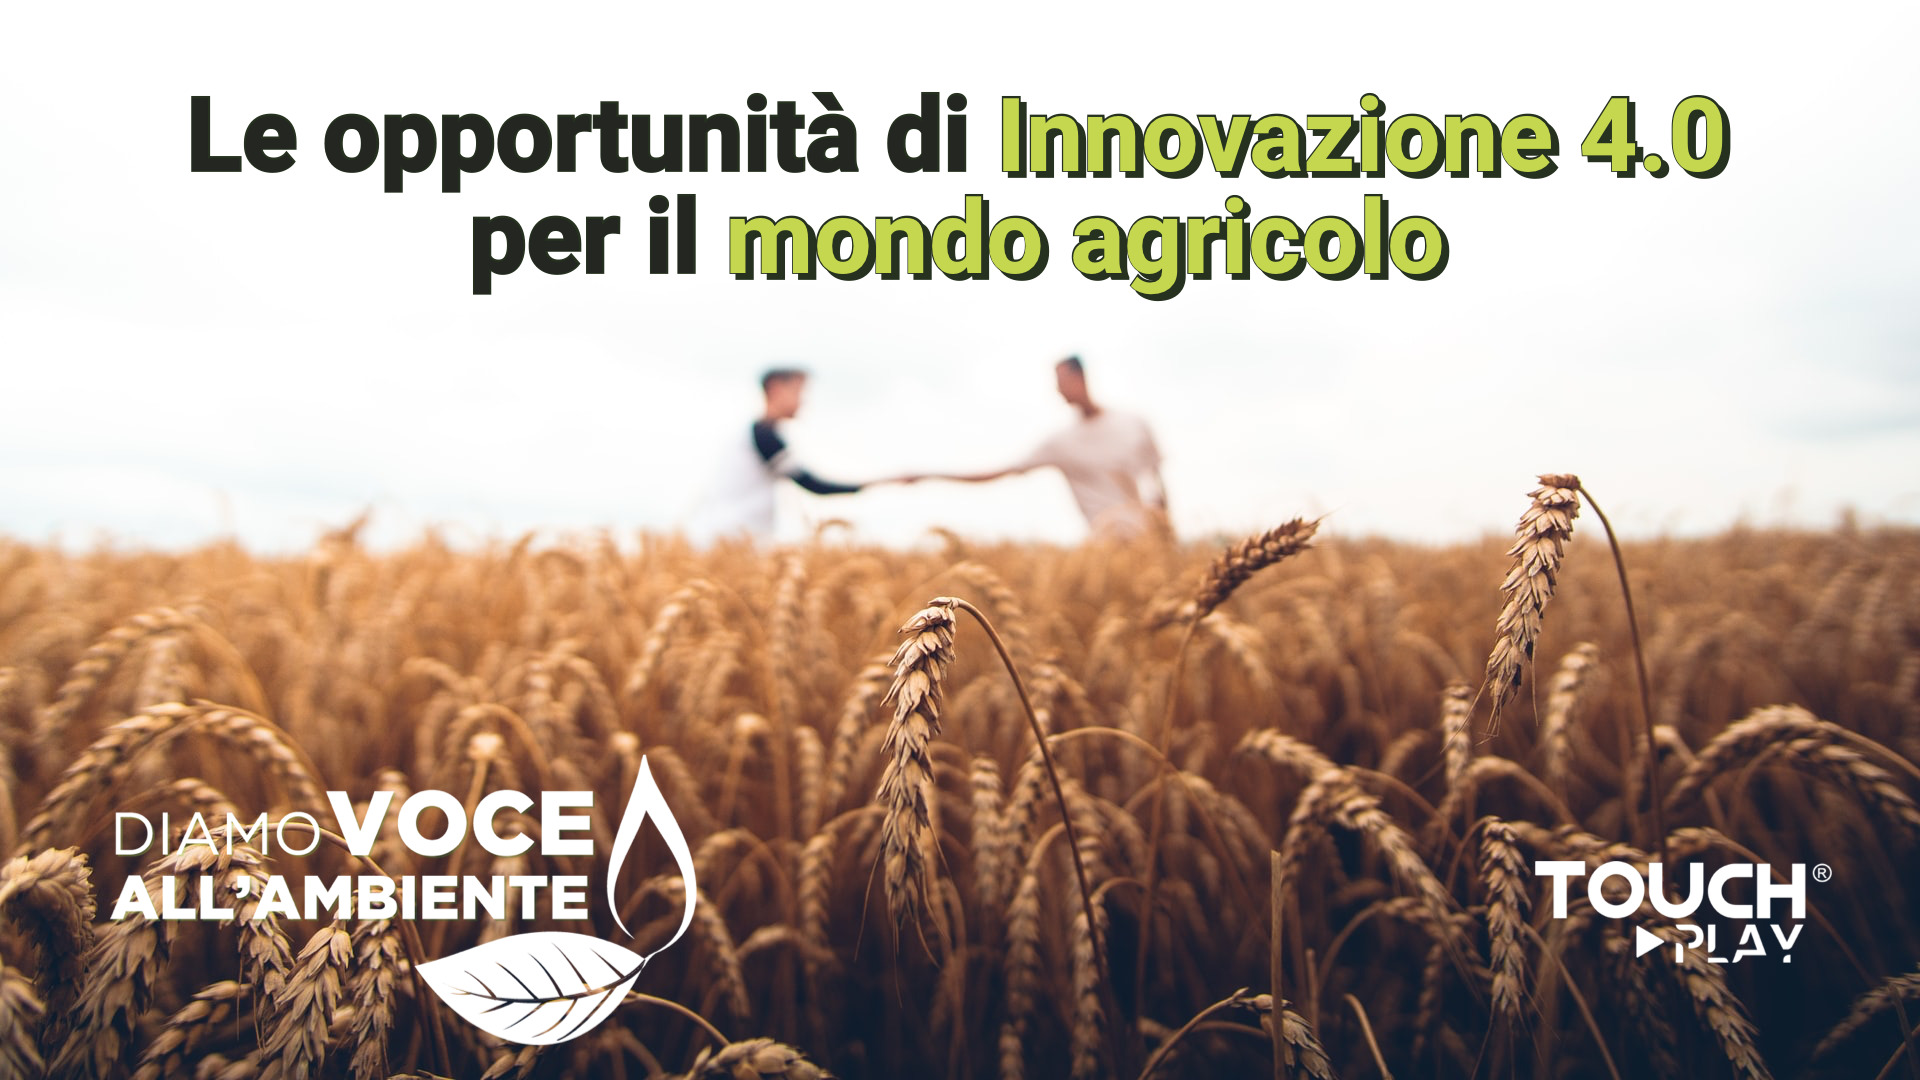 Le opportunità di Innovazioni 4.0 per il mondo agricolo